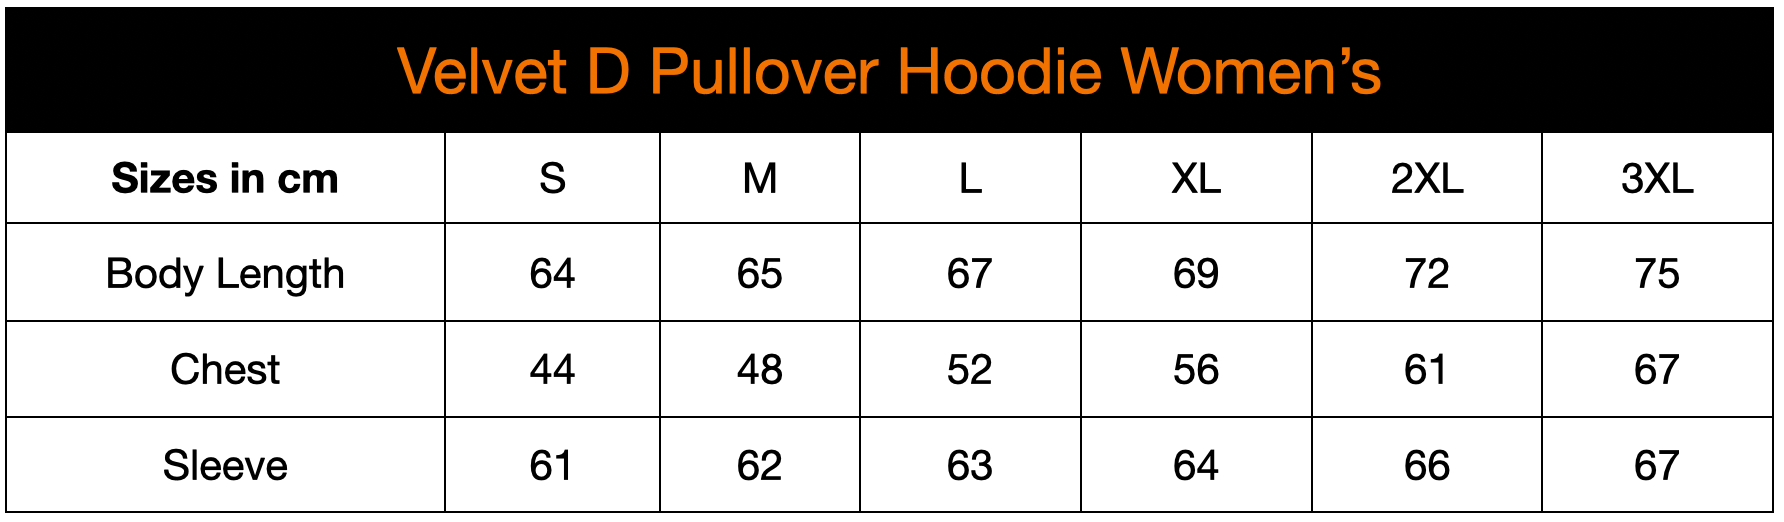 Velvet D Pullover Hoodie - Women's